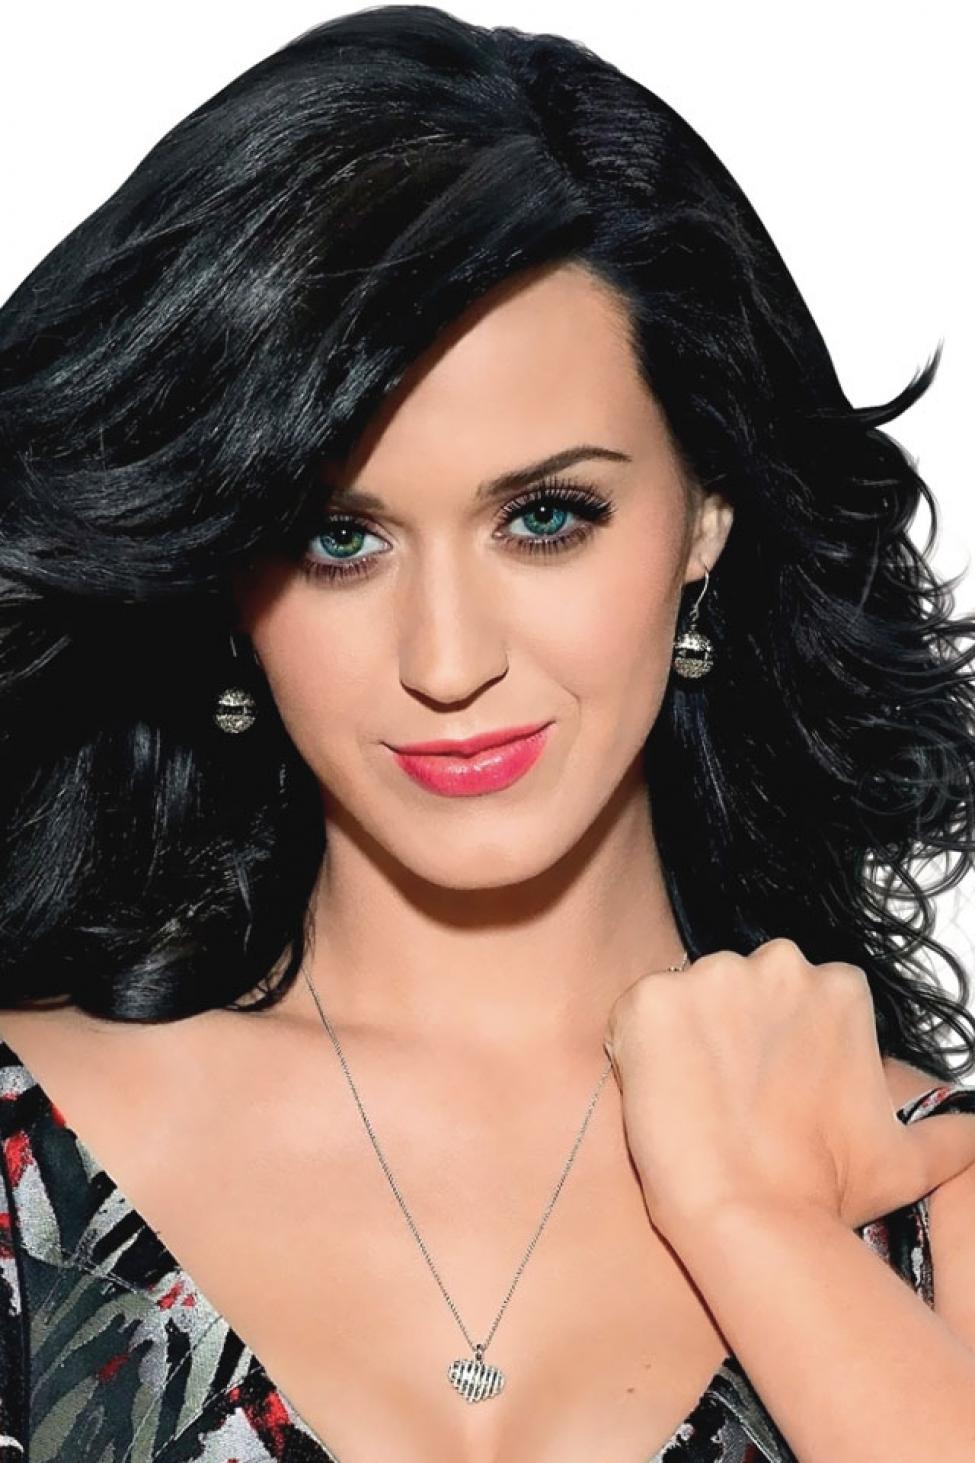 Rumor Has It that Katy Perry is Experiencing Female Hair Loss